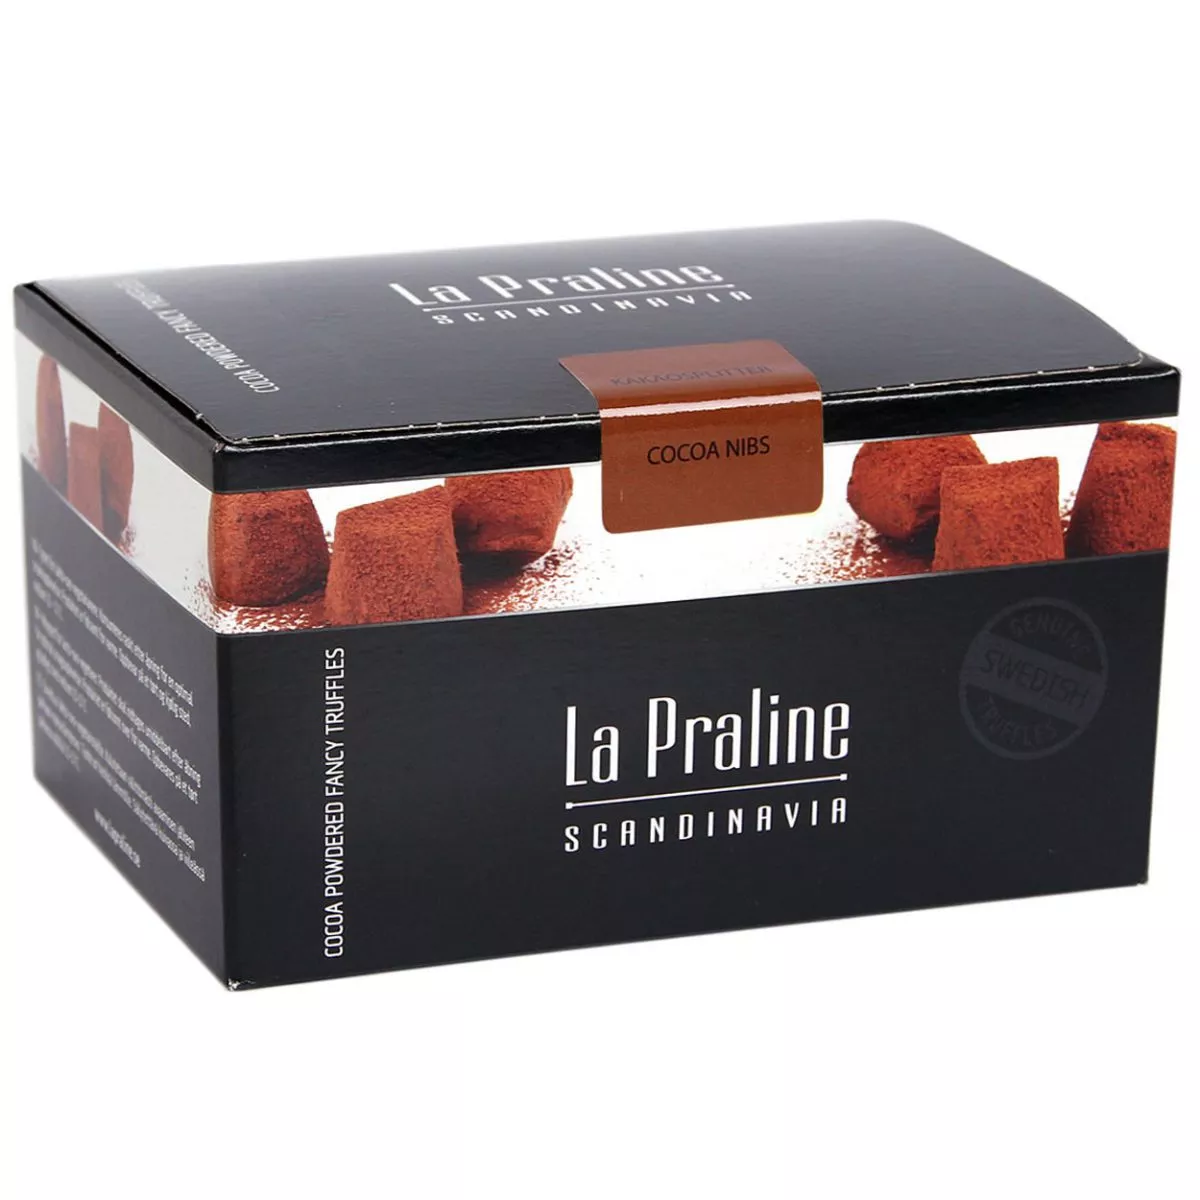 La Praline Fancy Truffles Kakaosplitter - cocoa nibs (200g) 1